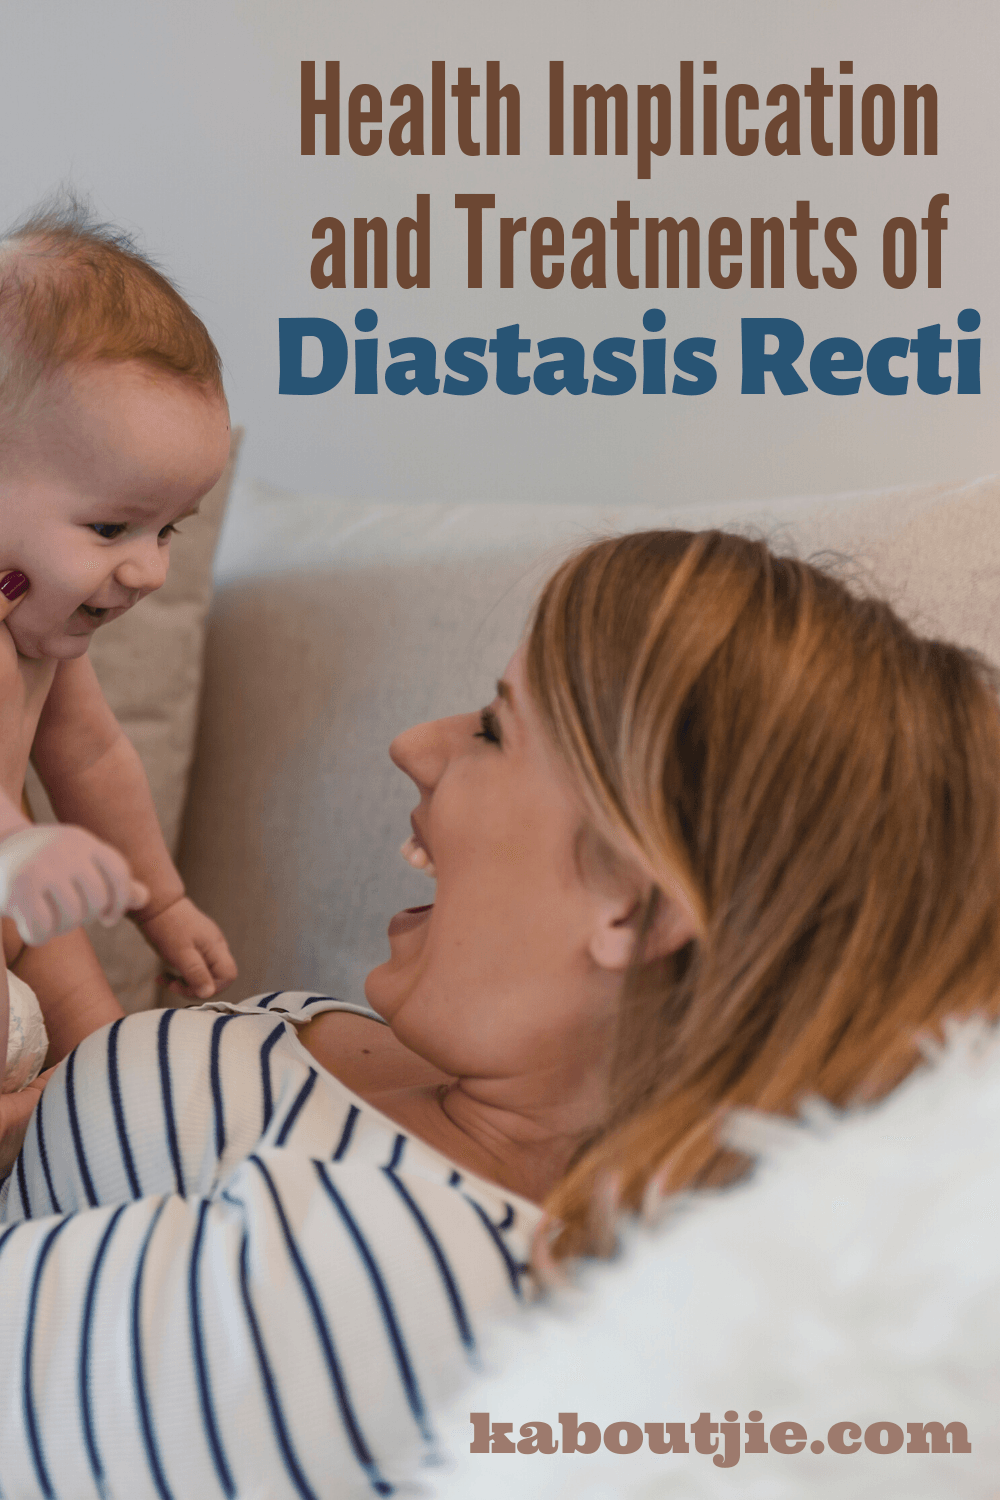 Health Implication and Treatments Of Diastasis Recti